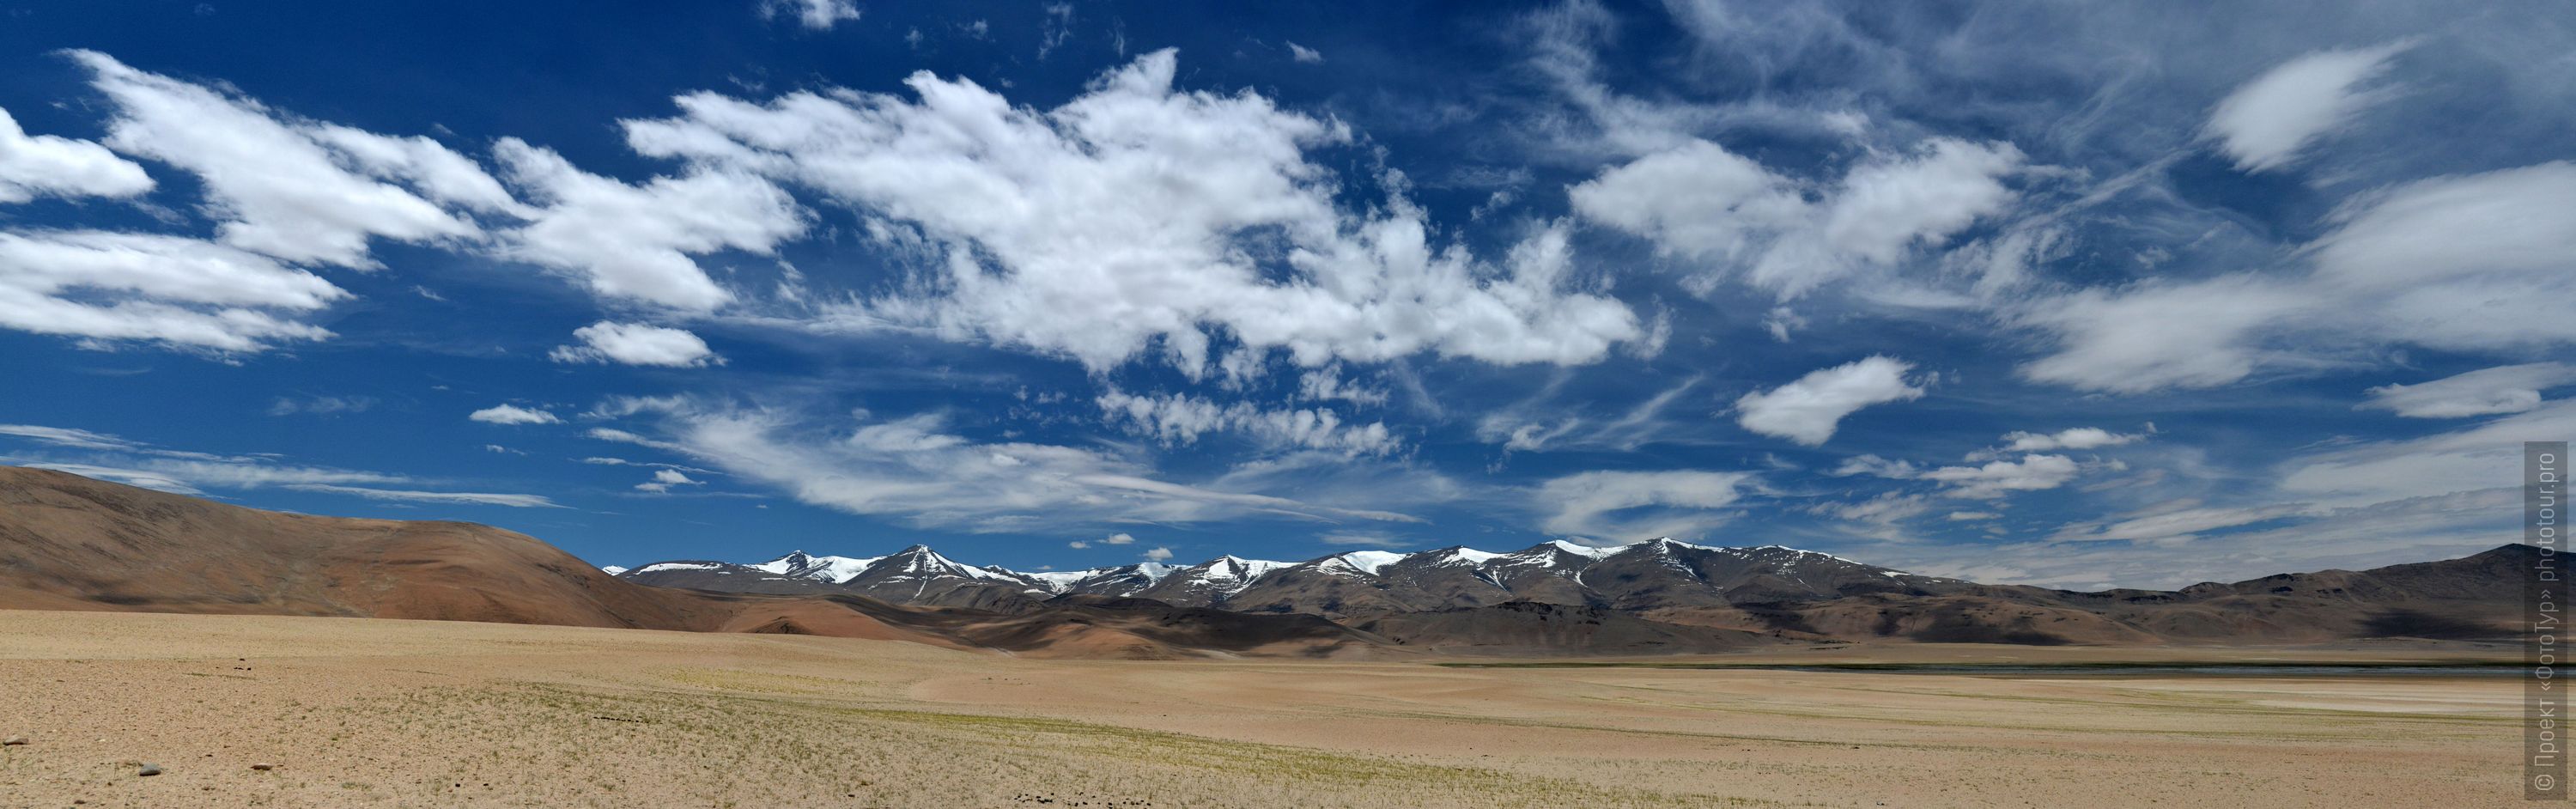 Вид на долину Рупшу с перевала Таглунг Ла, Ладакх. Тур Тибет Озерный Рекламный: Высокогорные озера, долина гейзеров, Ламаюру, скальные монастыри, 01 - 10.09. 2023 года. Путешествие по озерам Ладакха.